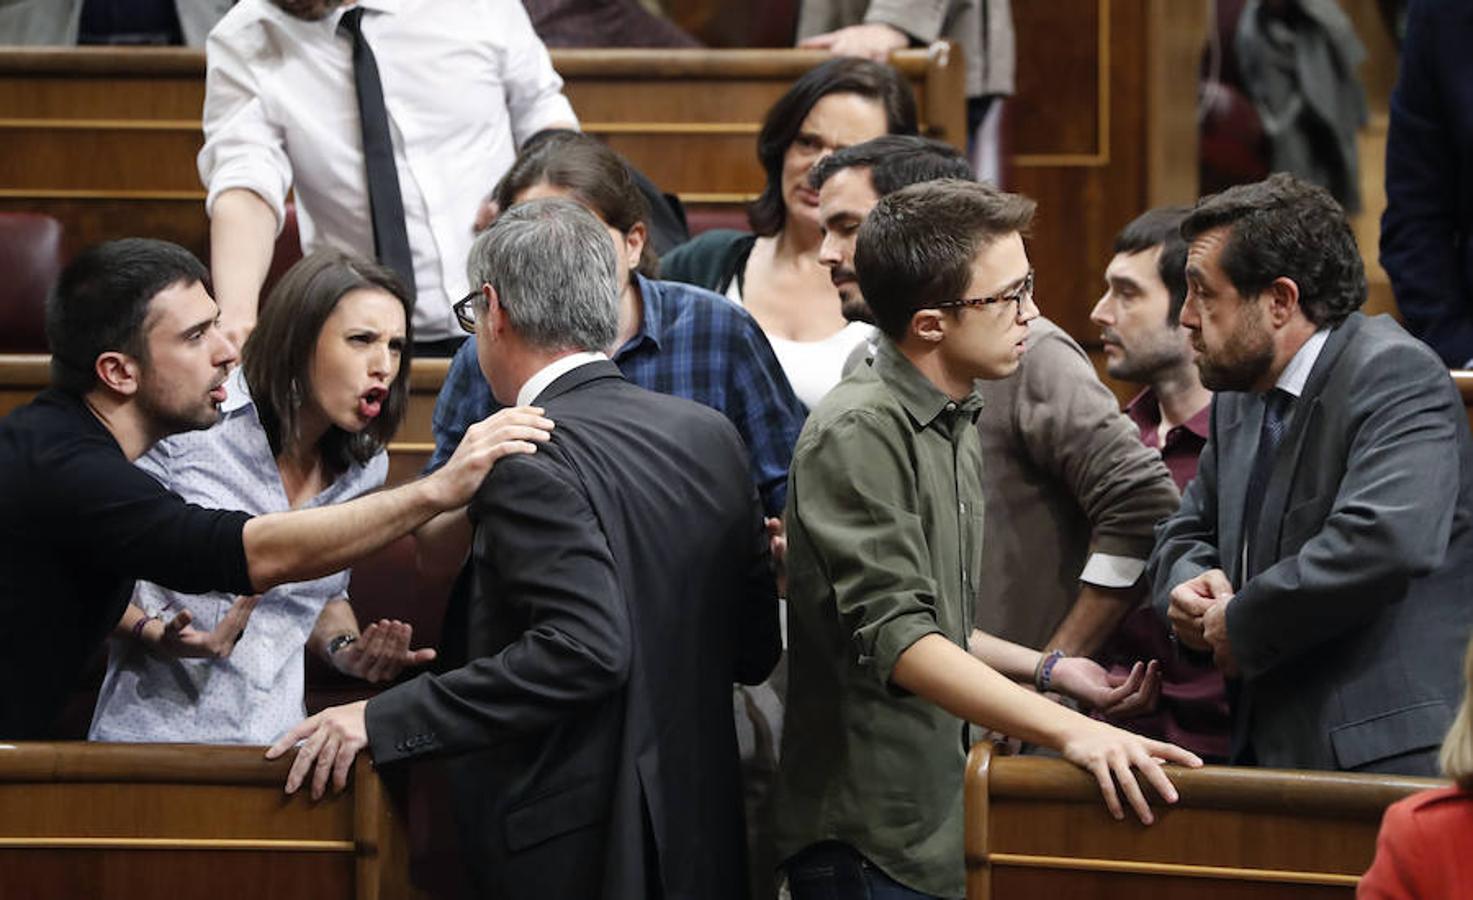 El diputado de Ciudadanos, José Manuel Villegas discute con los miembros de Podemos Ramón Espinar, Irene Montero y Pablo Iglesias durante el debate de investidura de Mariano Rajoy. 